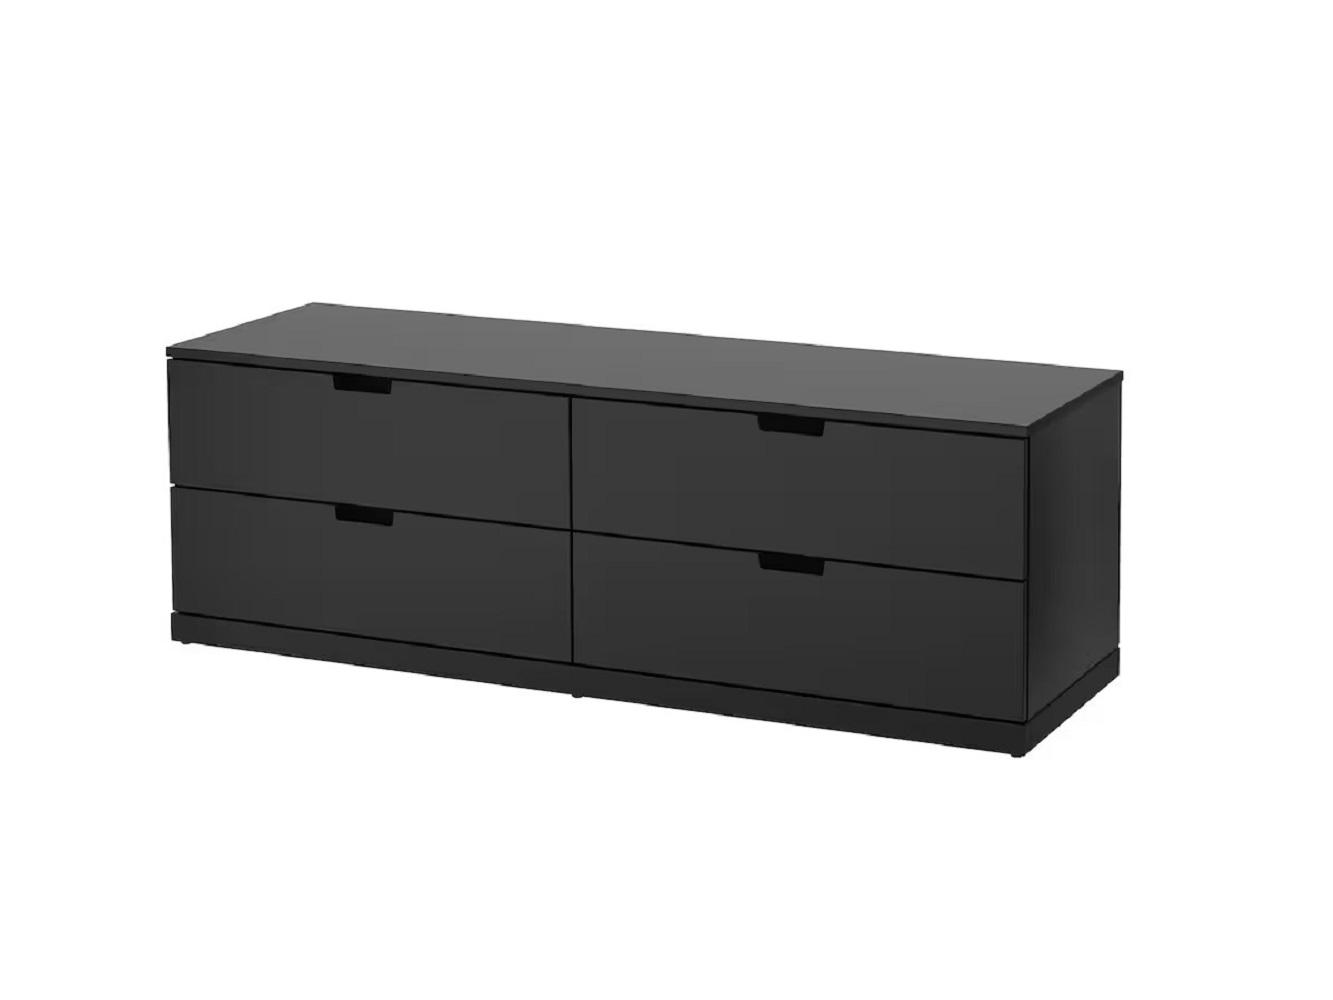 Комод Нордли 22 black ИКЕА (IKEA) изображение товара